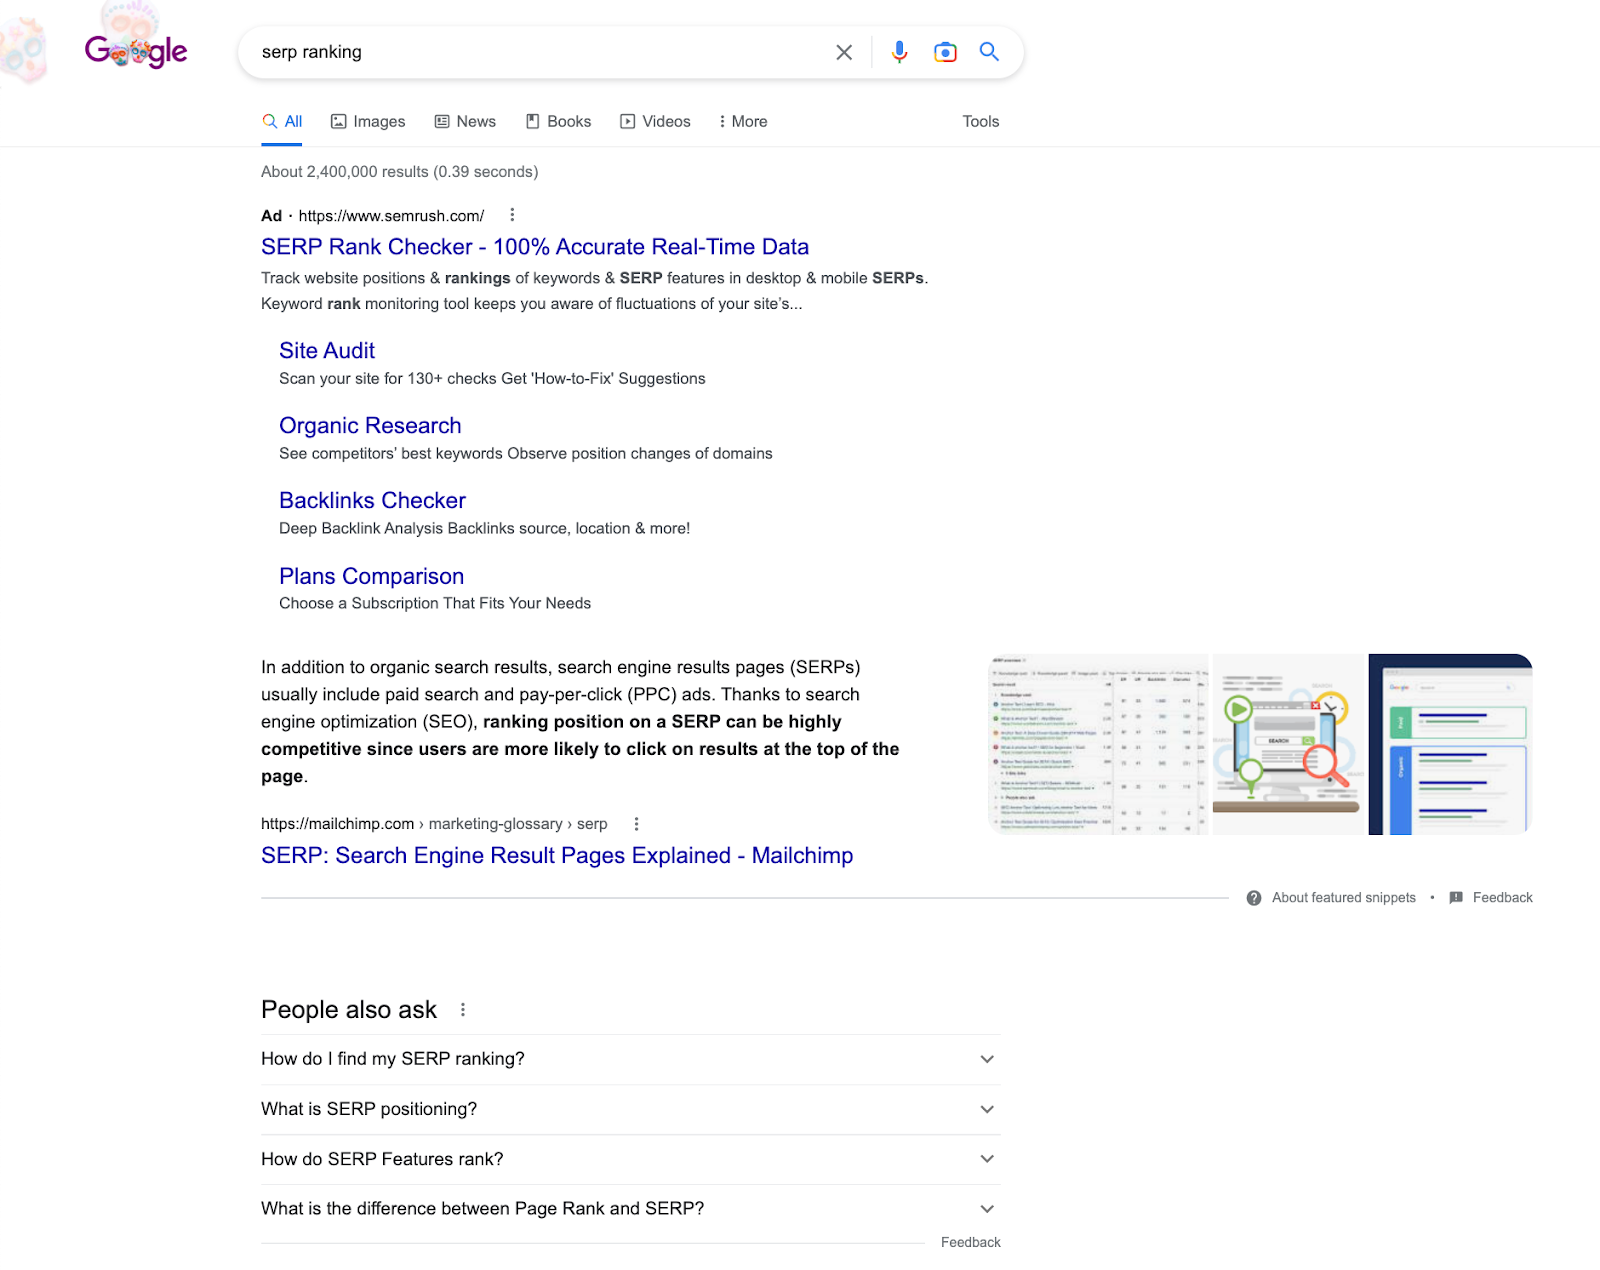 Скриншот для поискового запроса «Рейтинг SERP» в Google. Он включает в себя результаты поиска, избранный фрагмент и раздел «Люди также спрашивают», в котором представлены другие часто задаваемые связанные вопросы.